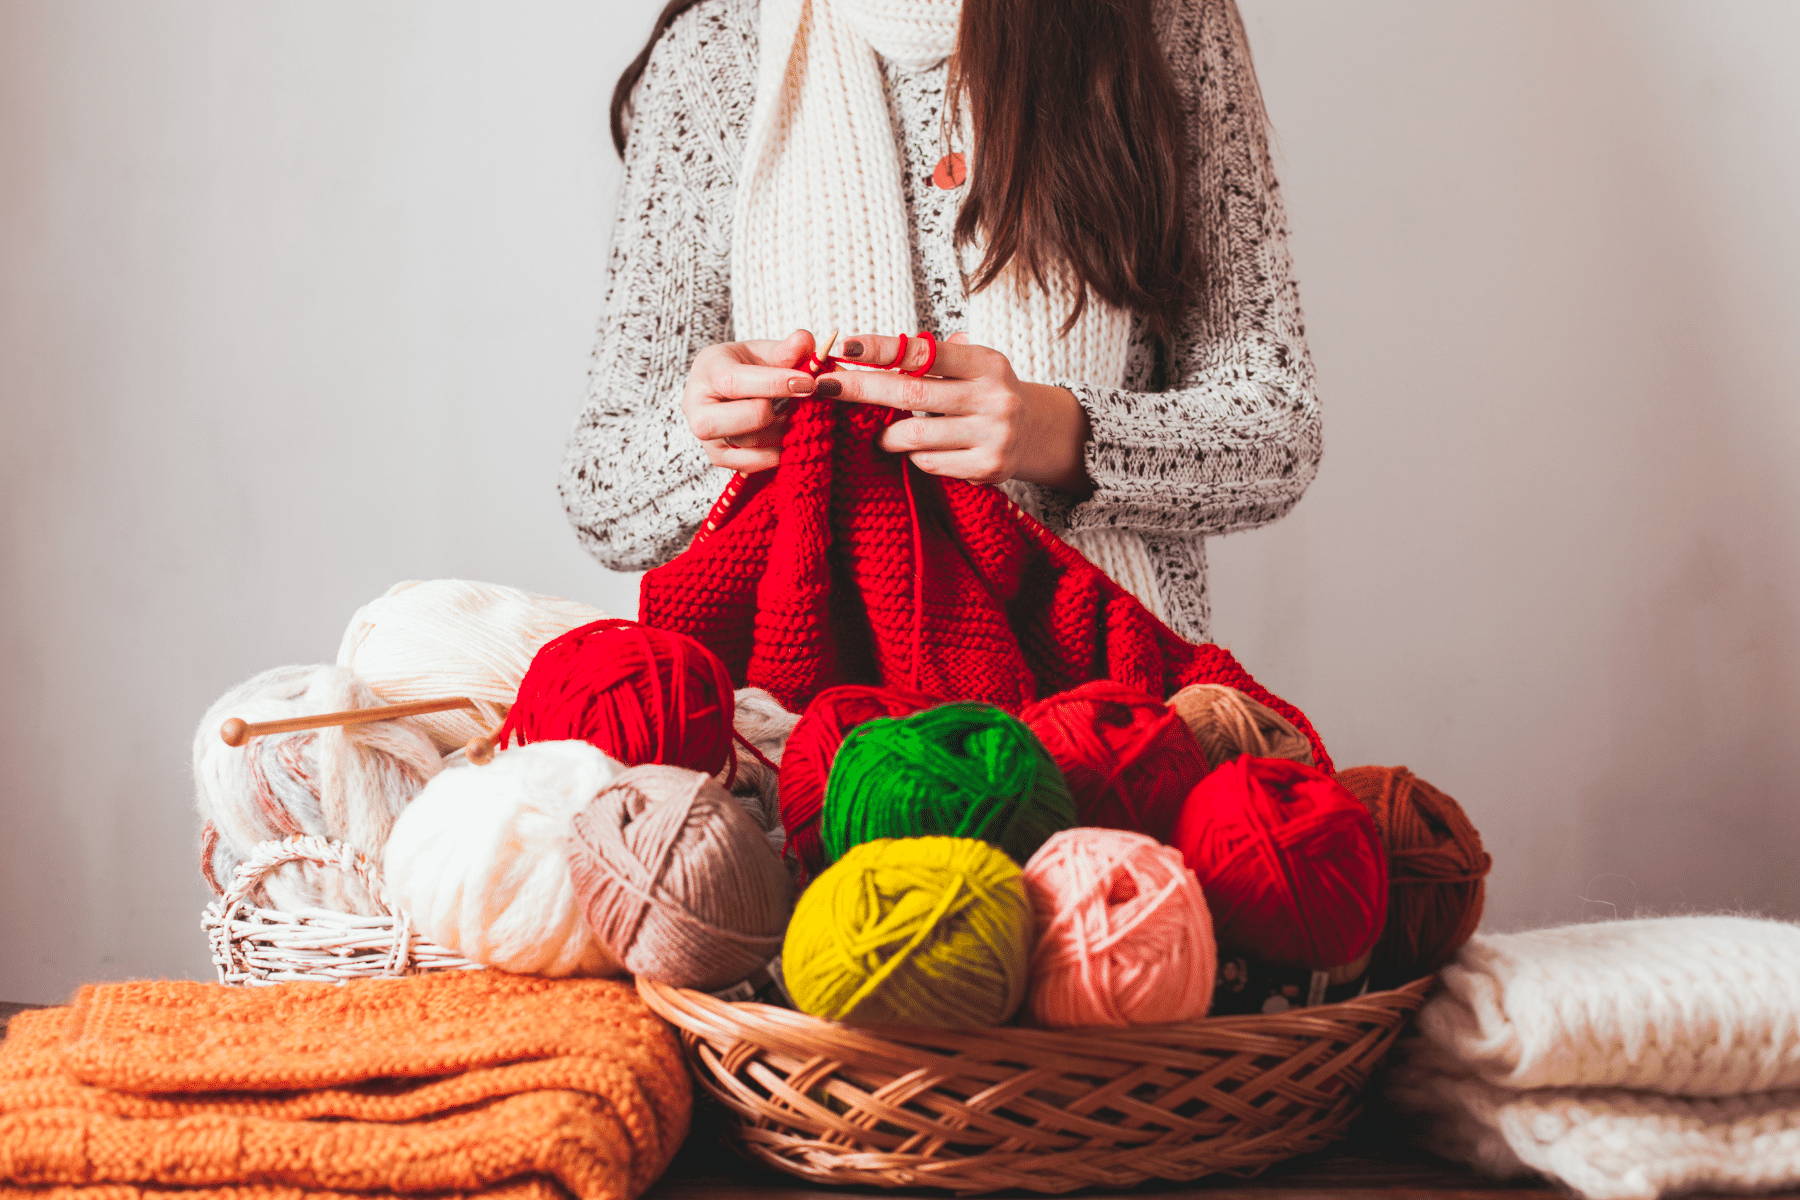 Woman knitting a sweater